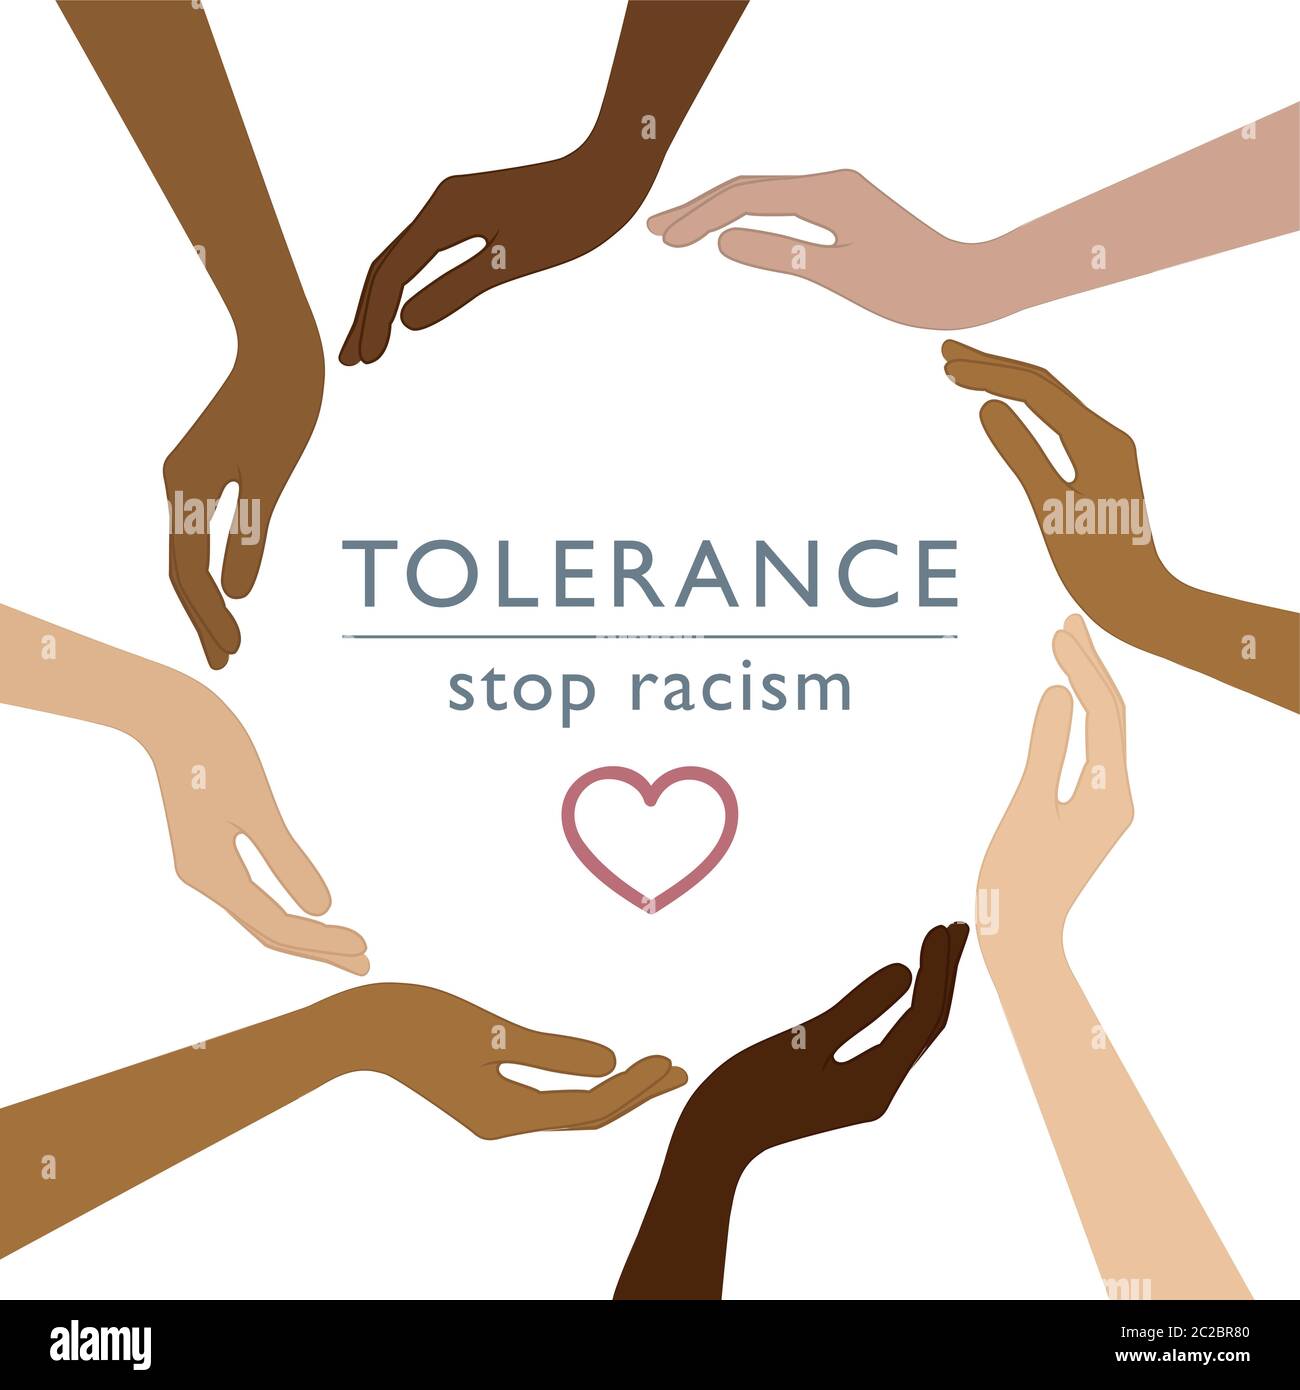 Stop al concetto di tolleranza al razzismo con le mani umane con diversi colori della pelle immagine vettoriale EPS10 Illustrazione Vettoriale